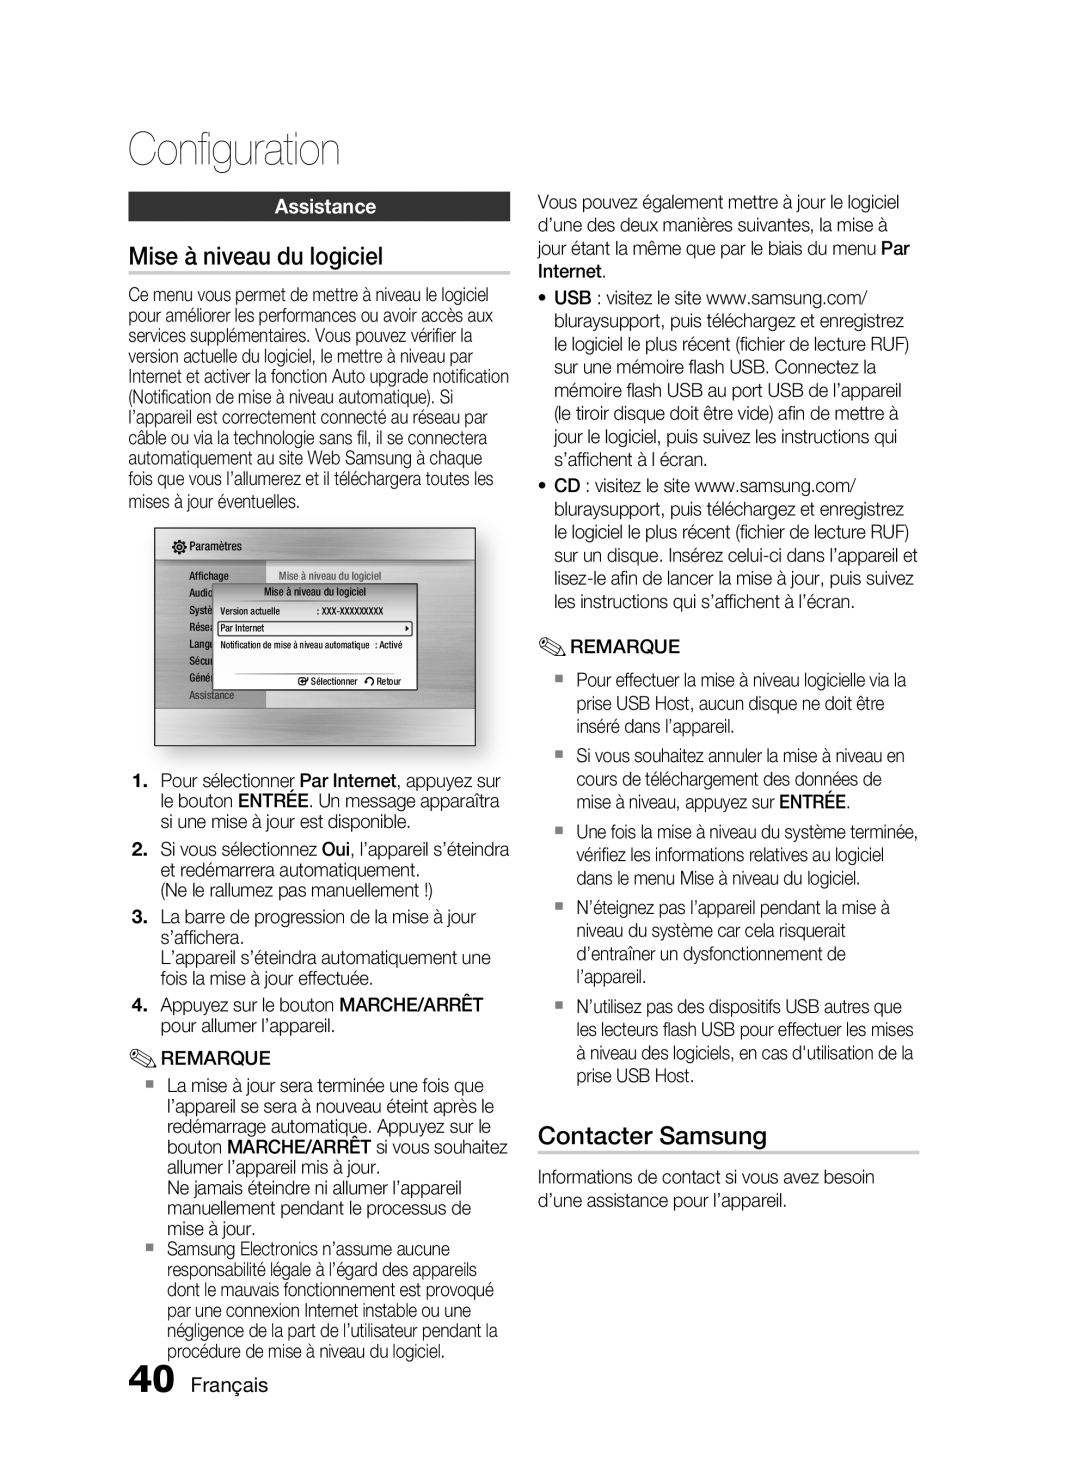 Samsung HT-C6200/XEF manual Mise à niveau du logiciel, Contacter Samsung, Assistance, Français, Conﬁguration 